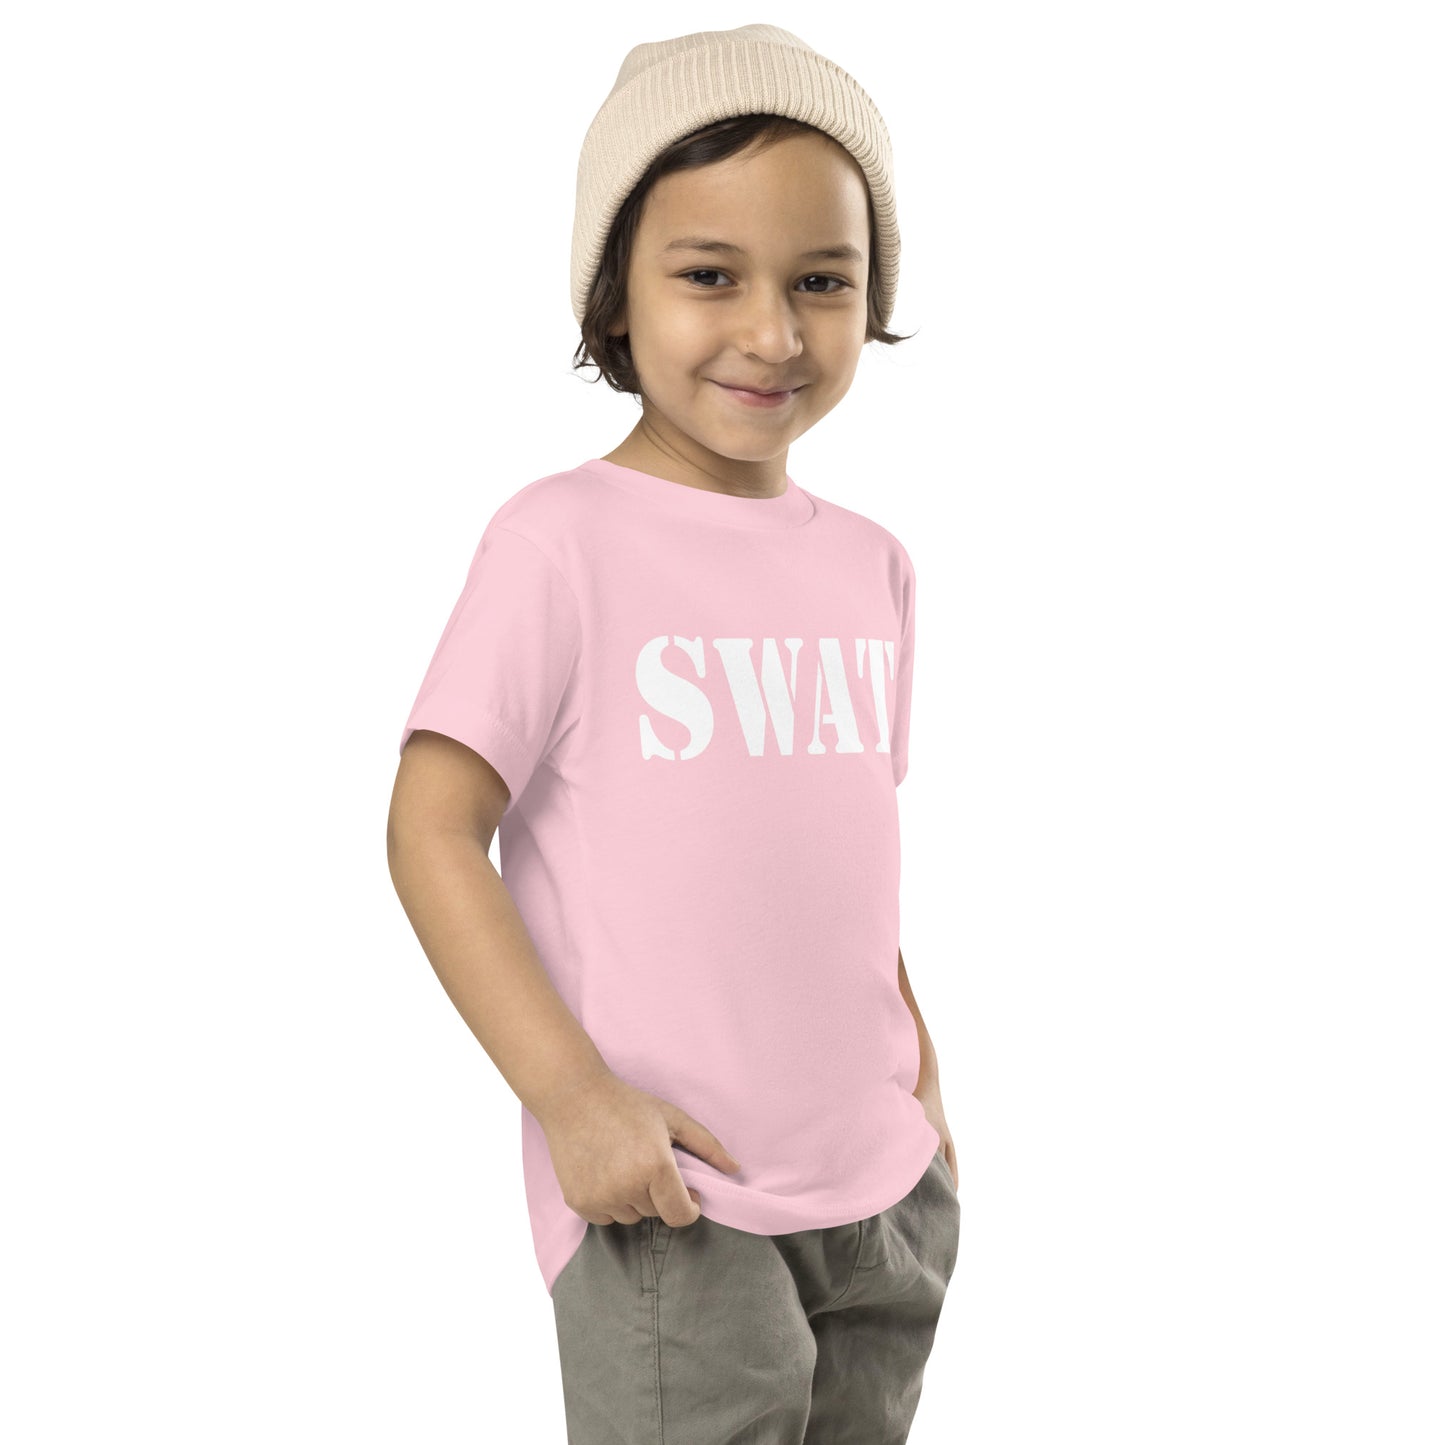 SWAT T-Shirt, Toddler